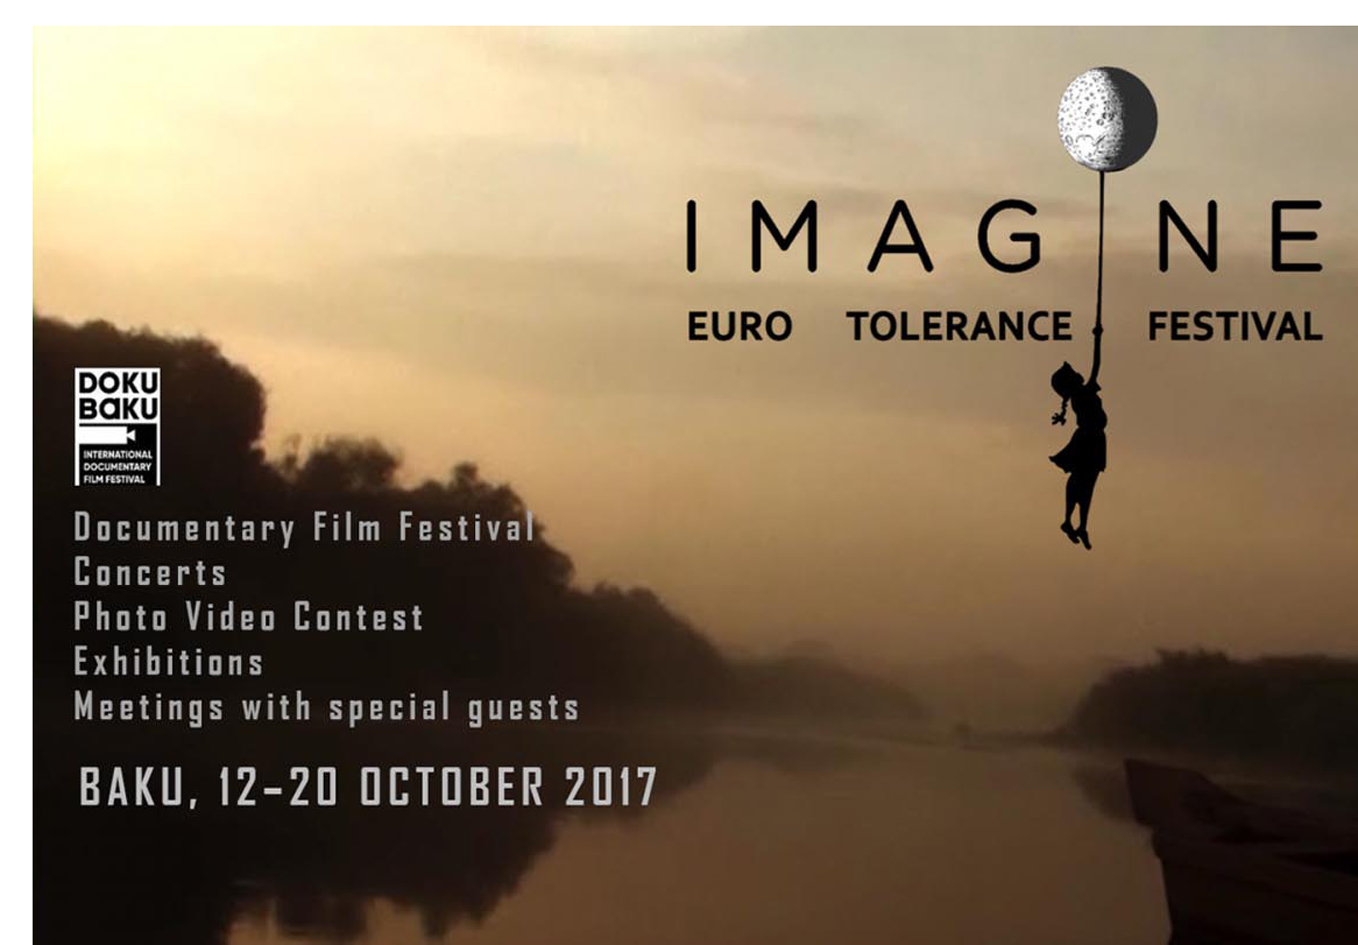 В Баку пройдет фестиваль европейской толерантности IMAGINE